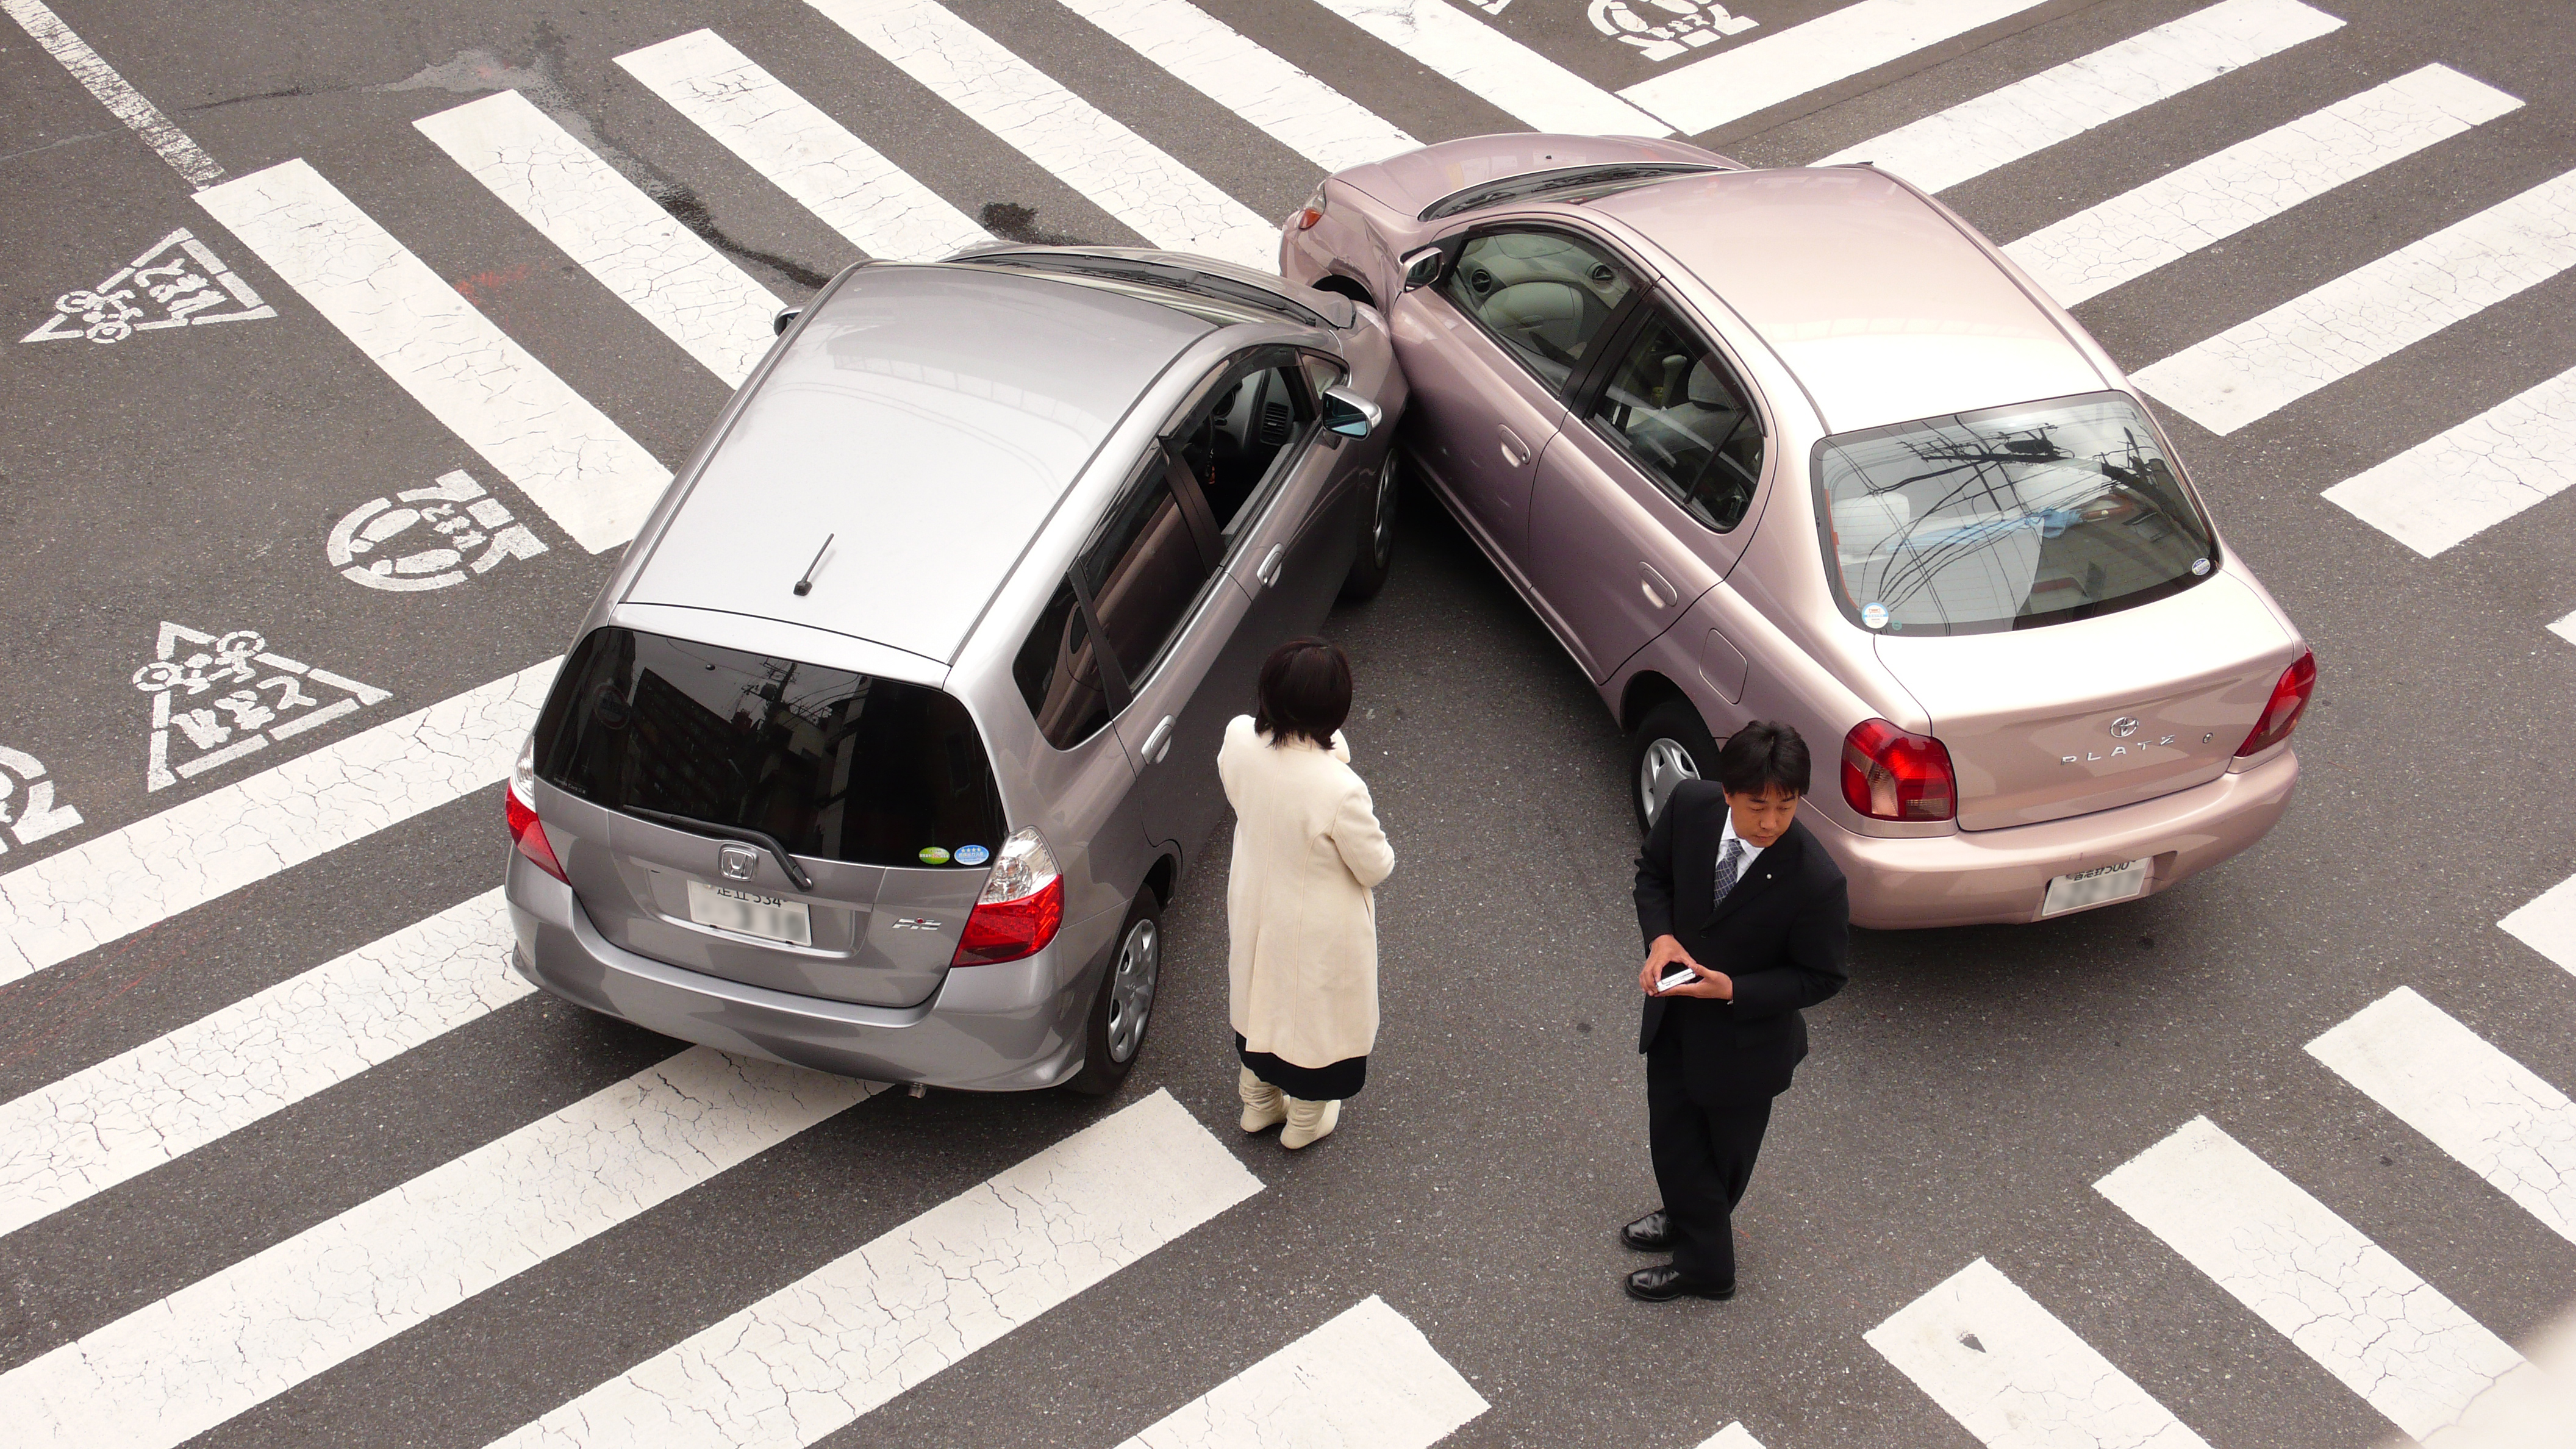 Description Japanese car accident blur.jpg